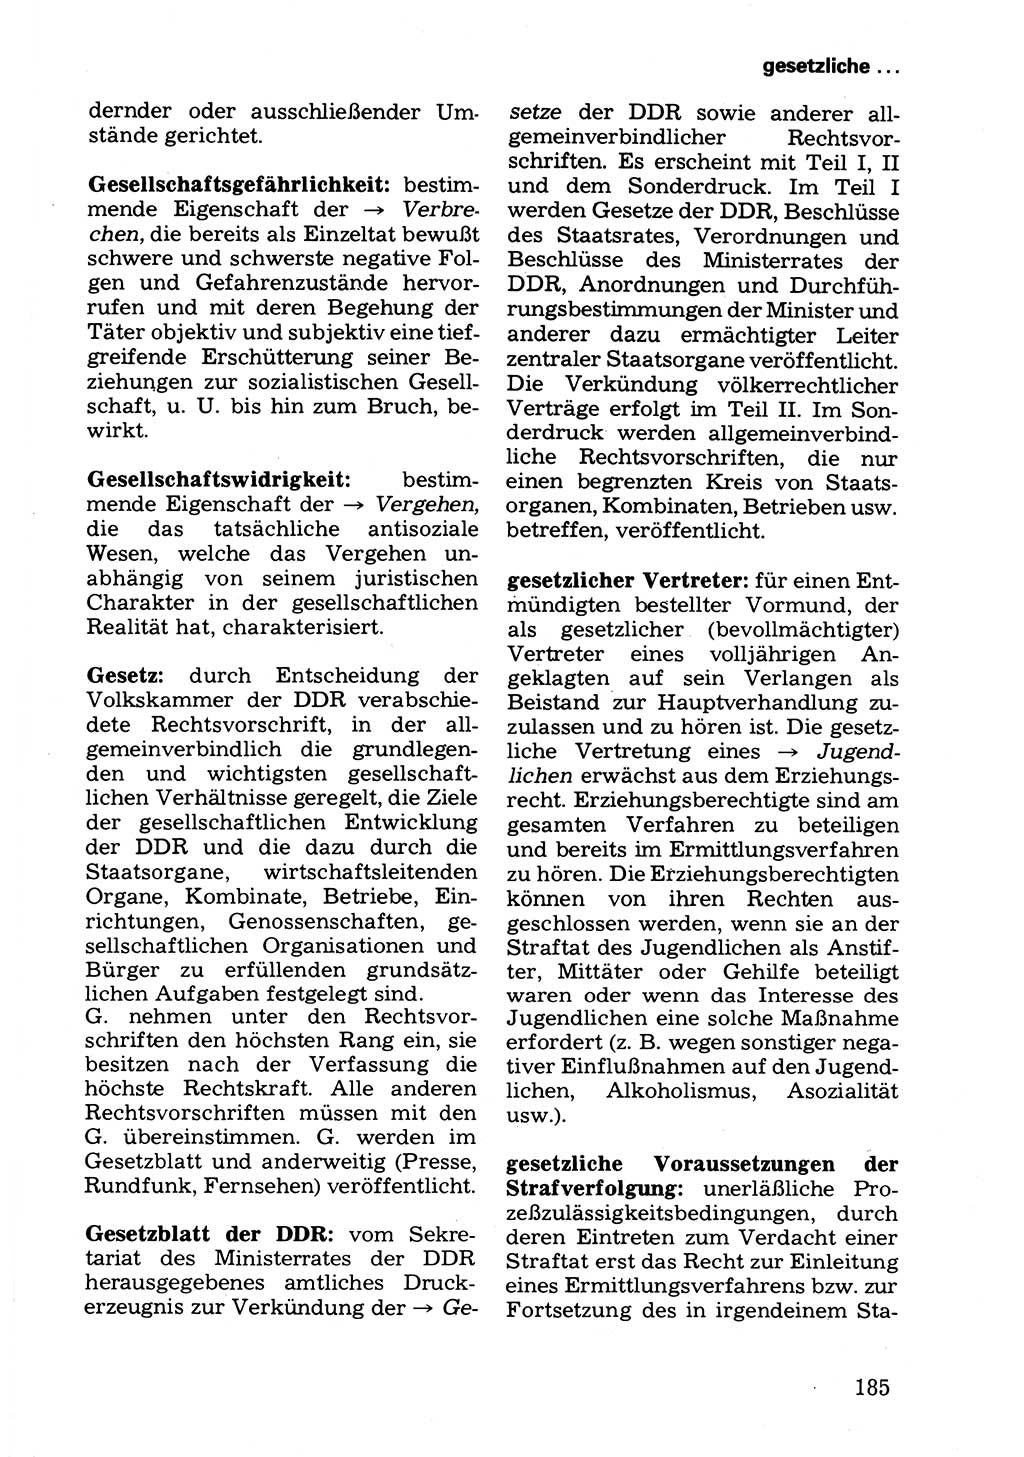 Wörterbuch der sozialistischen Kriminalistik [Deutsche Demokratische Republik (DDR)] 1981, Seite 185 (Wb. soz. Krim. DDR 1981, S. 185)